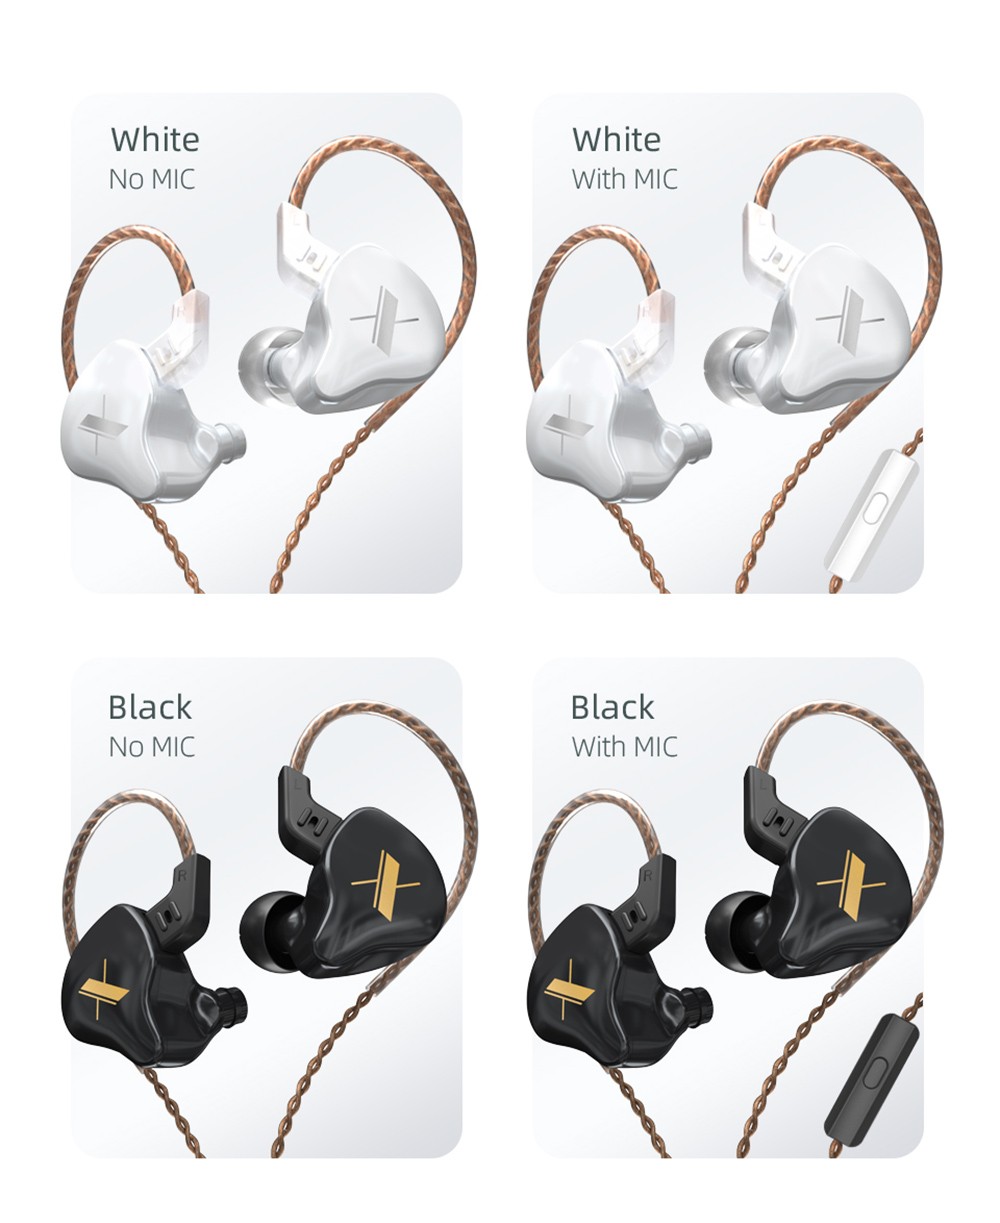 KZ EDX with Mic Wired Earphone In-ear Sport Noise Cancelling Headset - Black